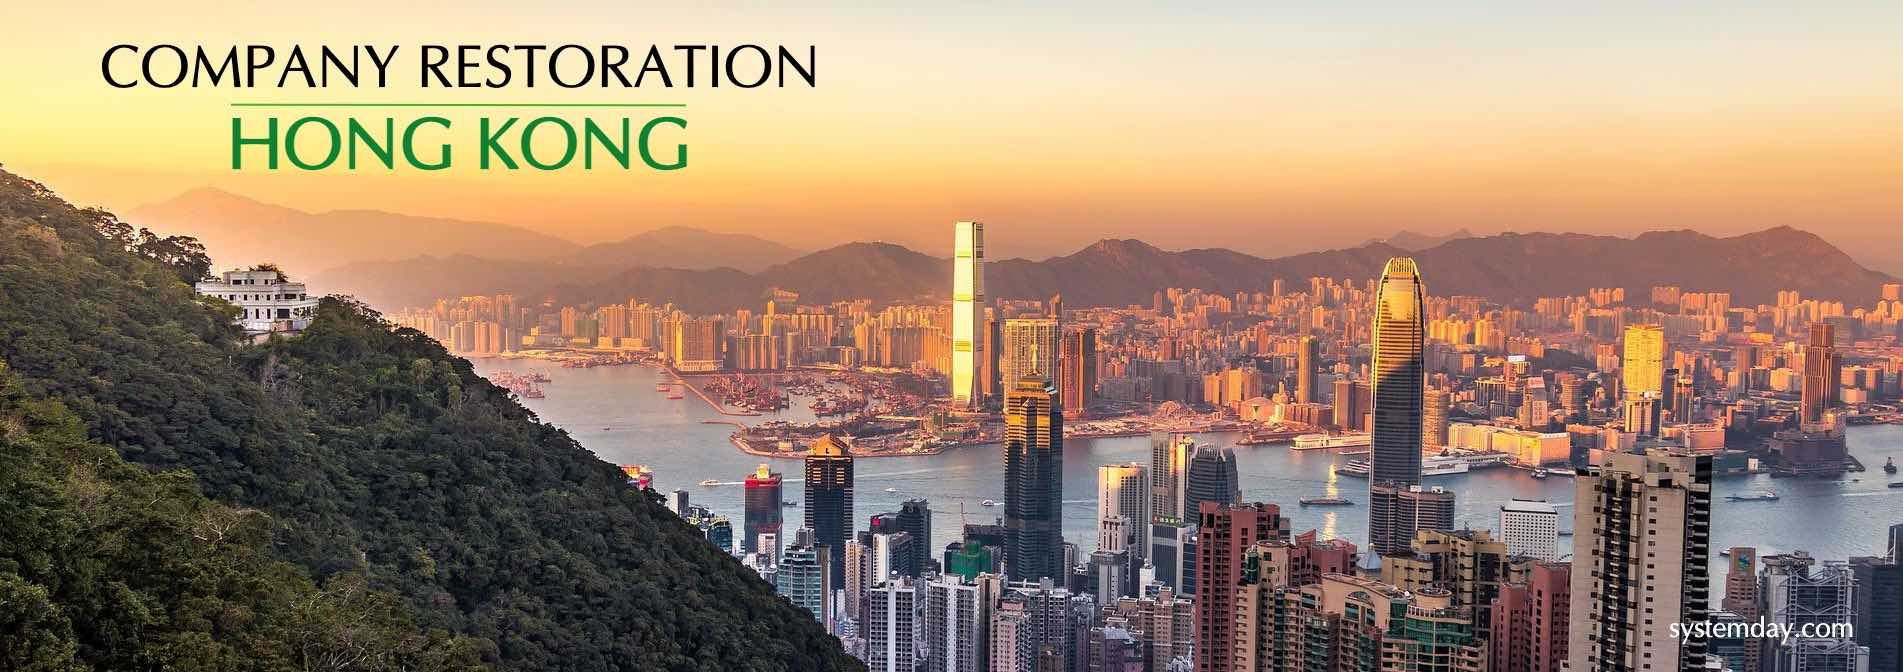 Hong Kong Company Restoration